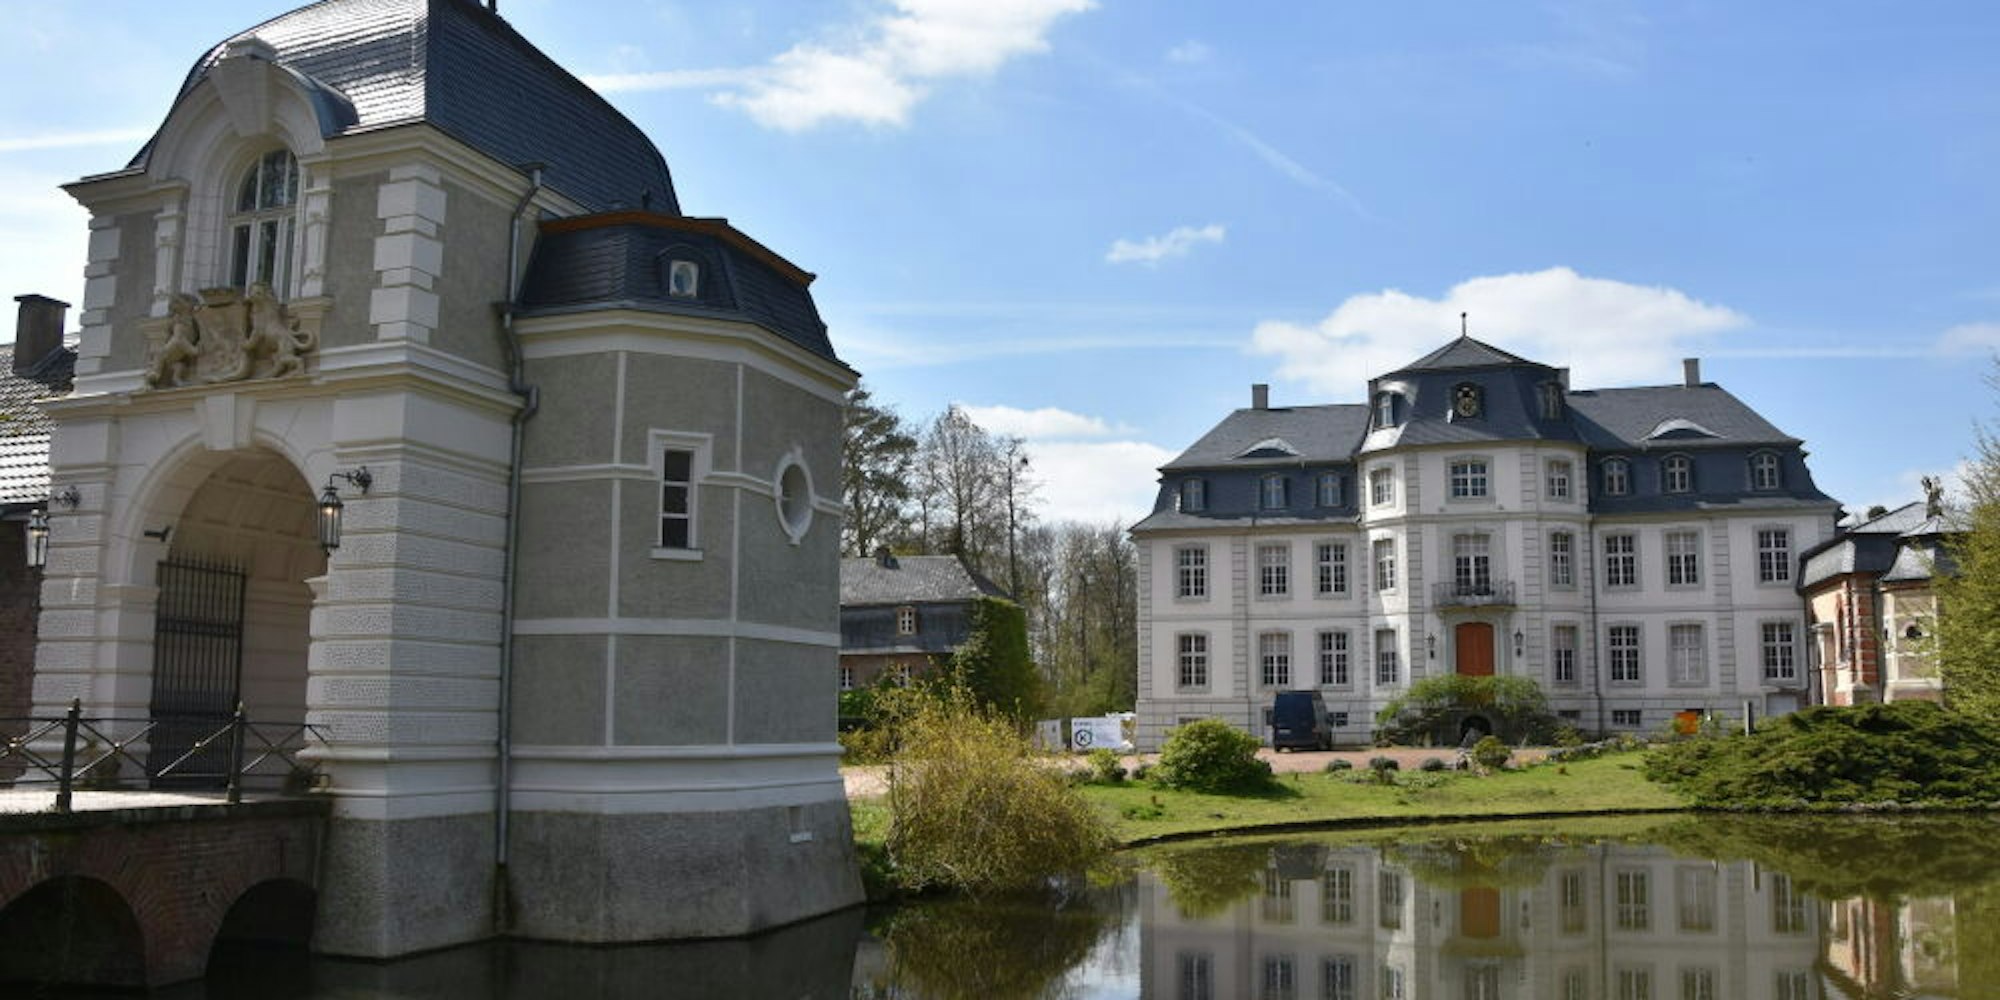 Links neben dem Herrenhaus entsteht ein Heizungskeller. Für die Unterfangung des Schlosses hat der Bund 300 000 Euro bewilligt.